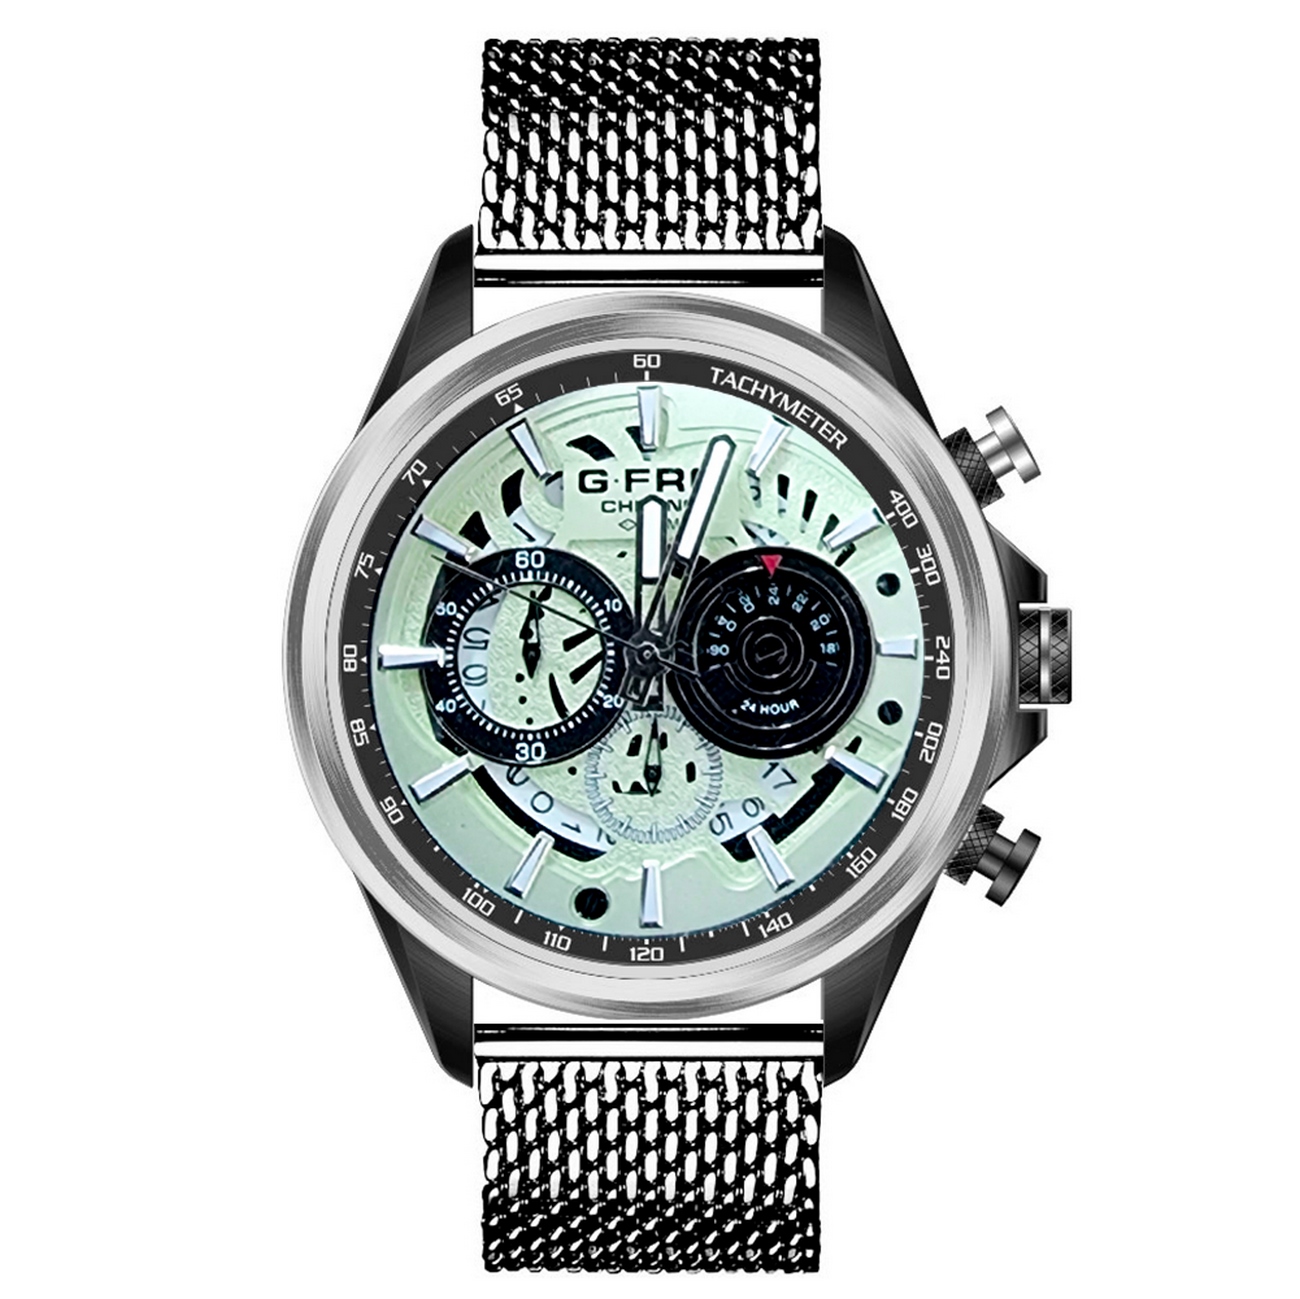 Reloj G-force Original H3718g Cronografo Plateado + Estuche